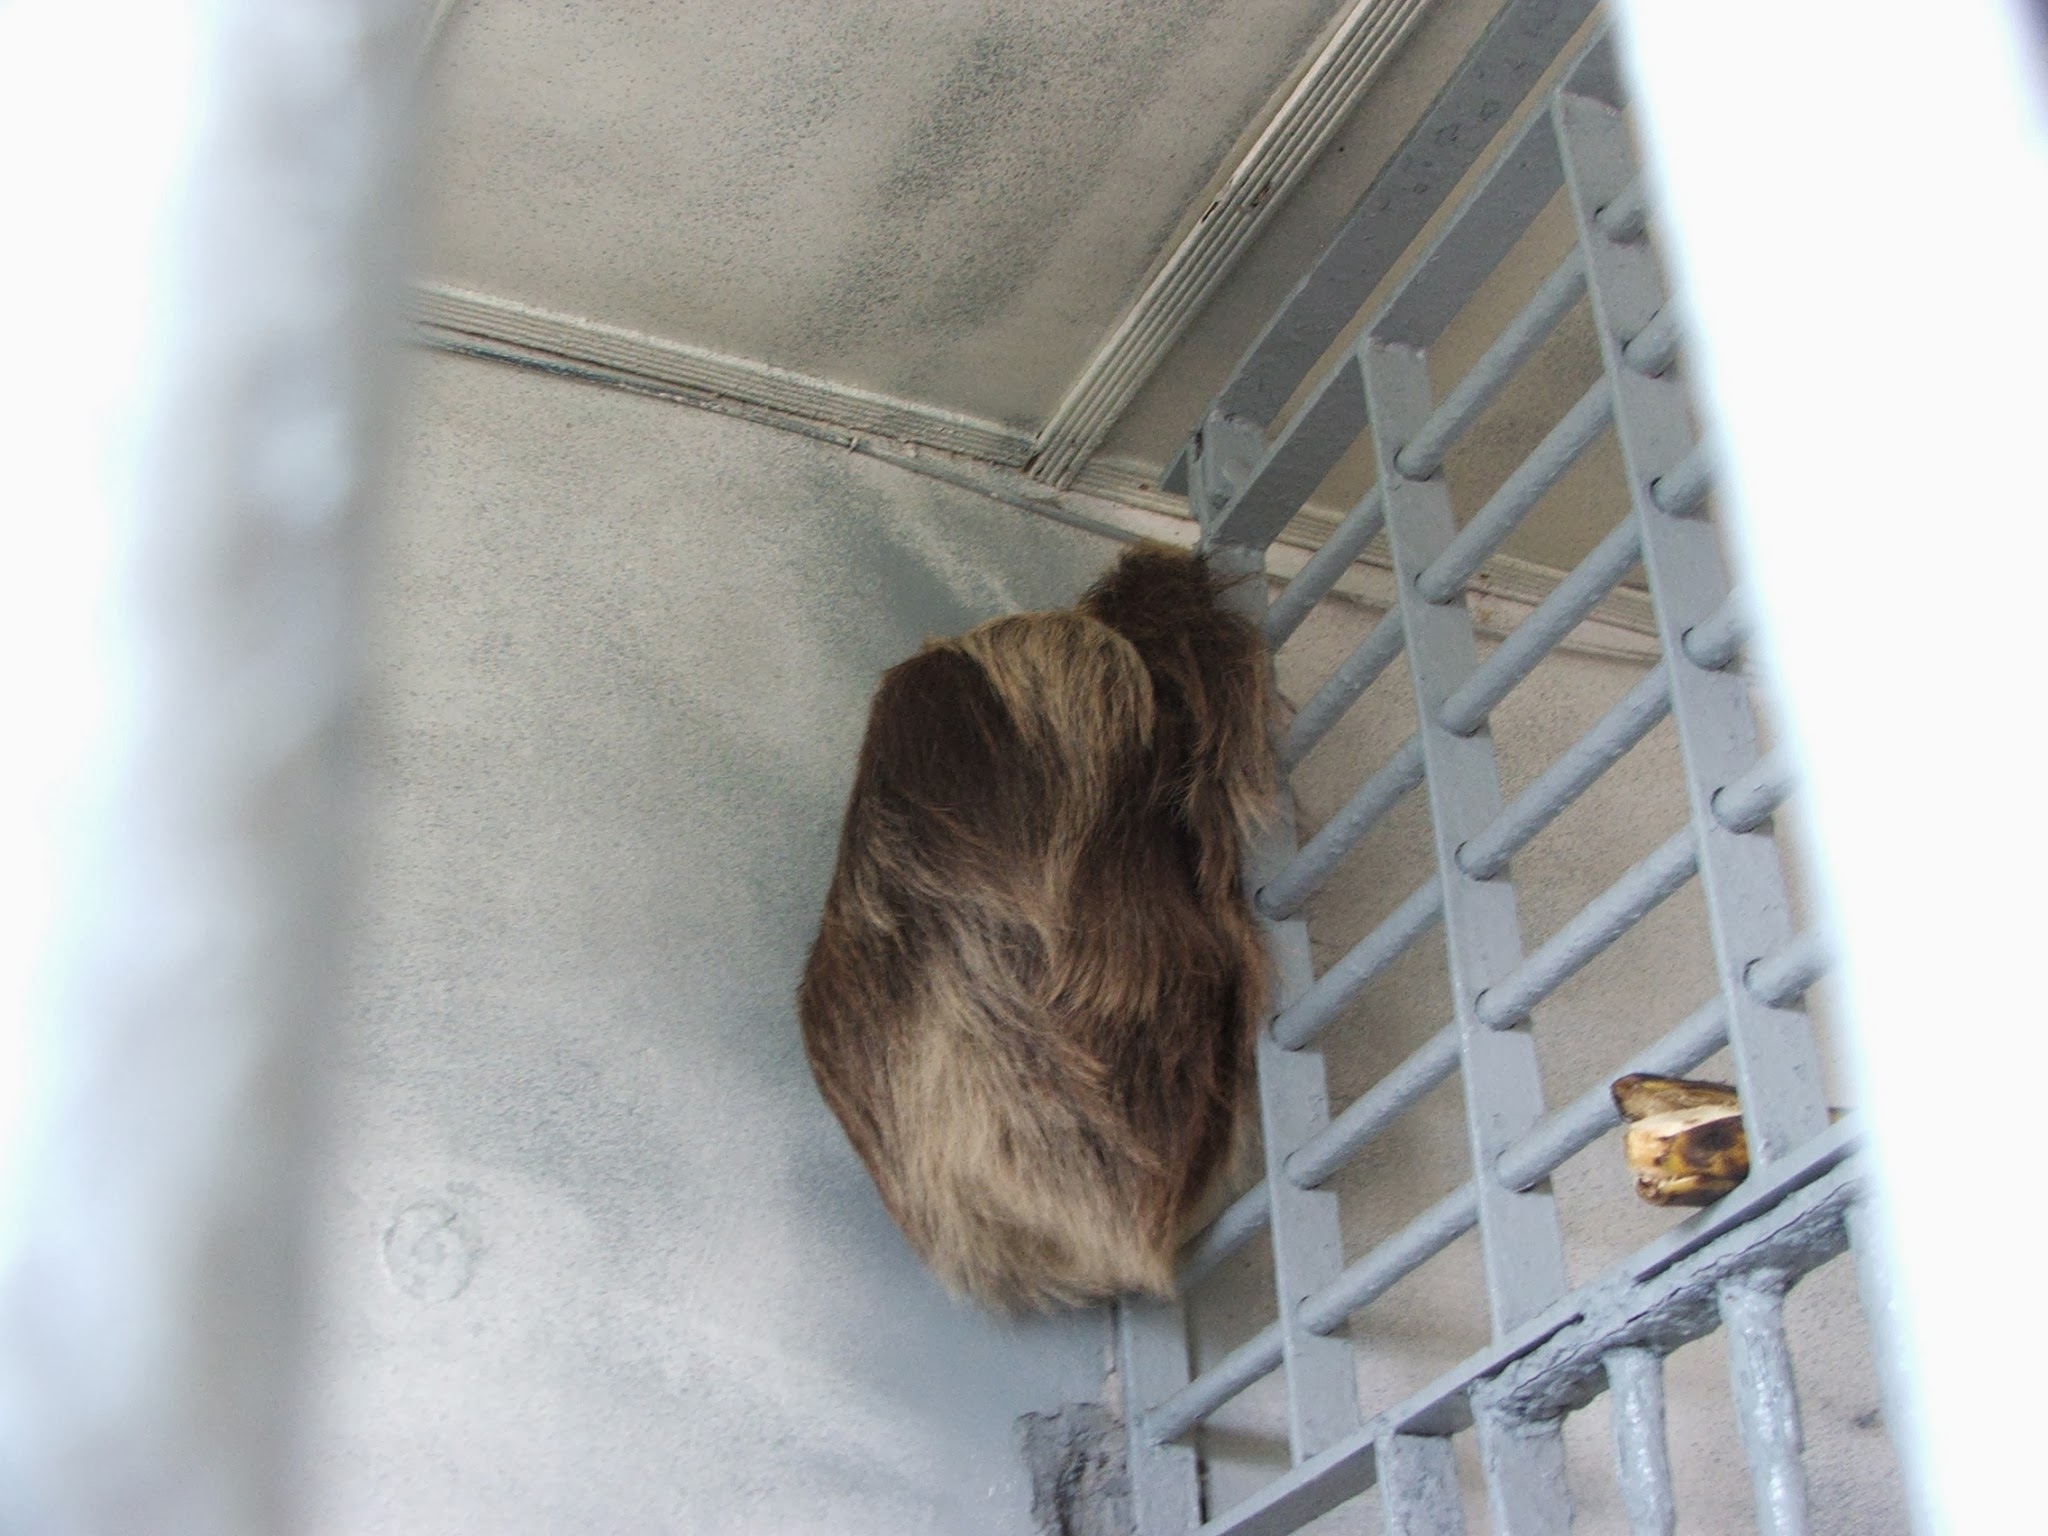 2/04/2010. Rescate de fauna incautada.  Nos informaron de éste oso perezoso que tenían en el pueblo "encarcelado" y fuimos a su rescate.